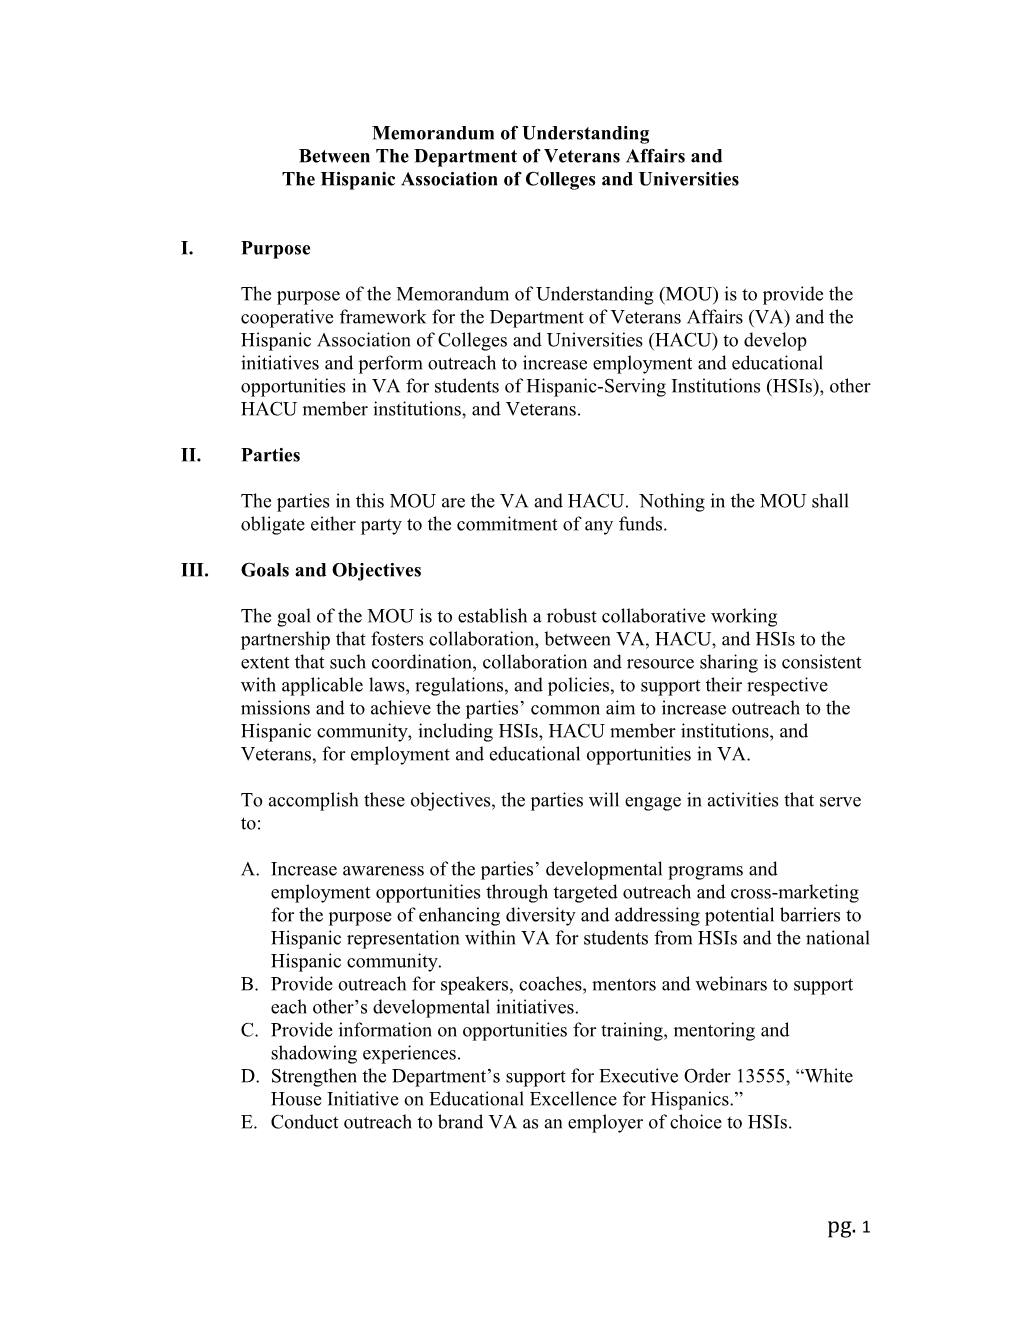 Outline of Memorandum of Understanding